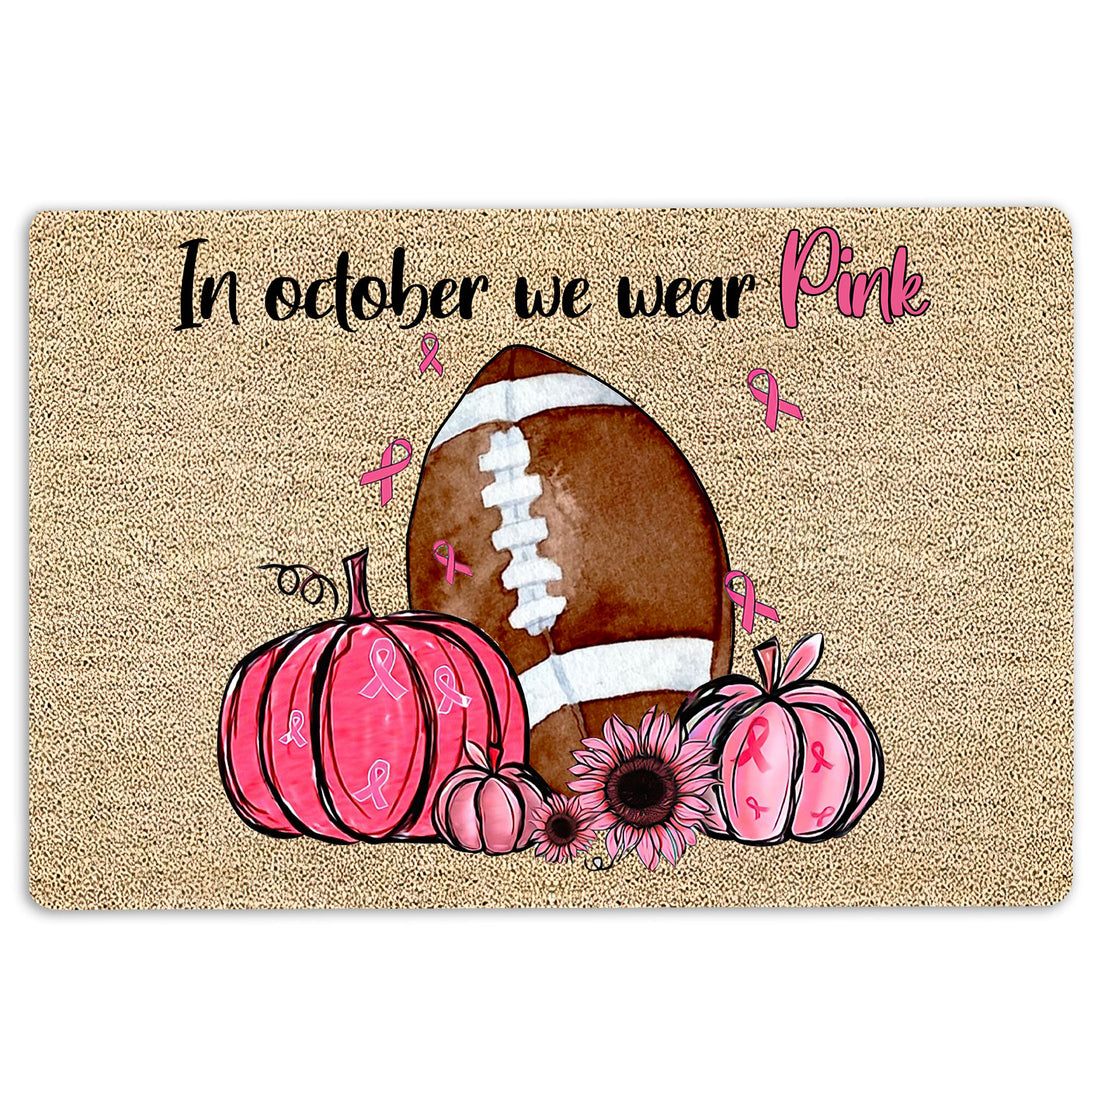 Ohaprints-Doormat-Outdoor-Indoor-Breast-Cancer-Football-In-October-We-Wear-Pink-Rubber-Door-Mat-1919-18'' x 30''